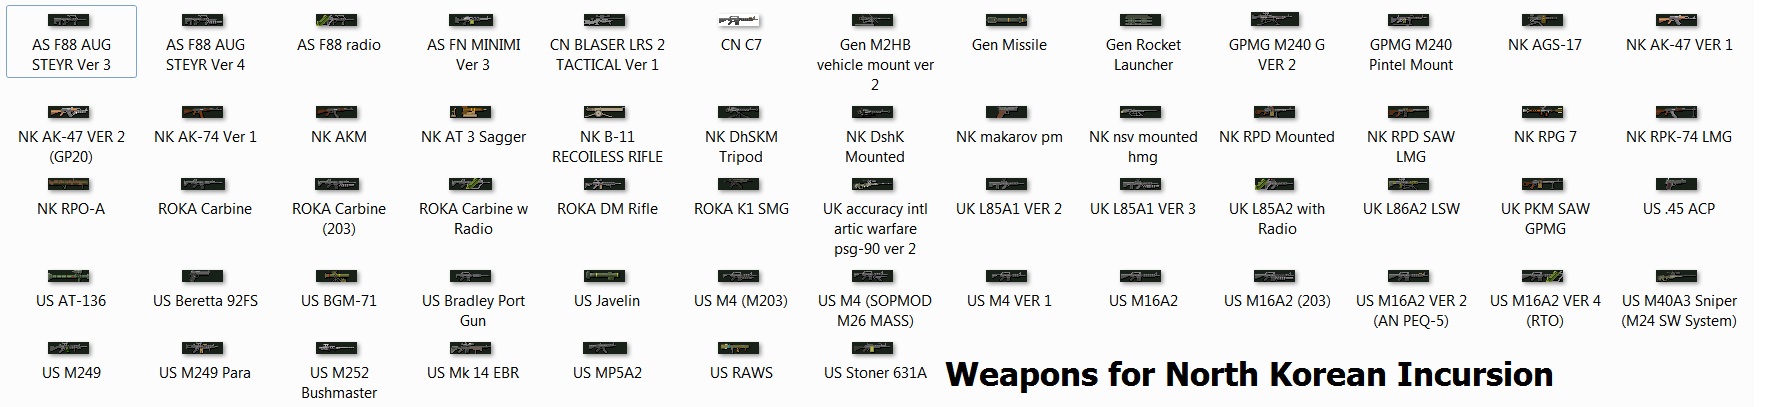 Weapons.jpg